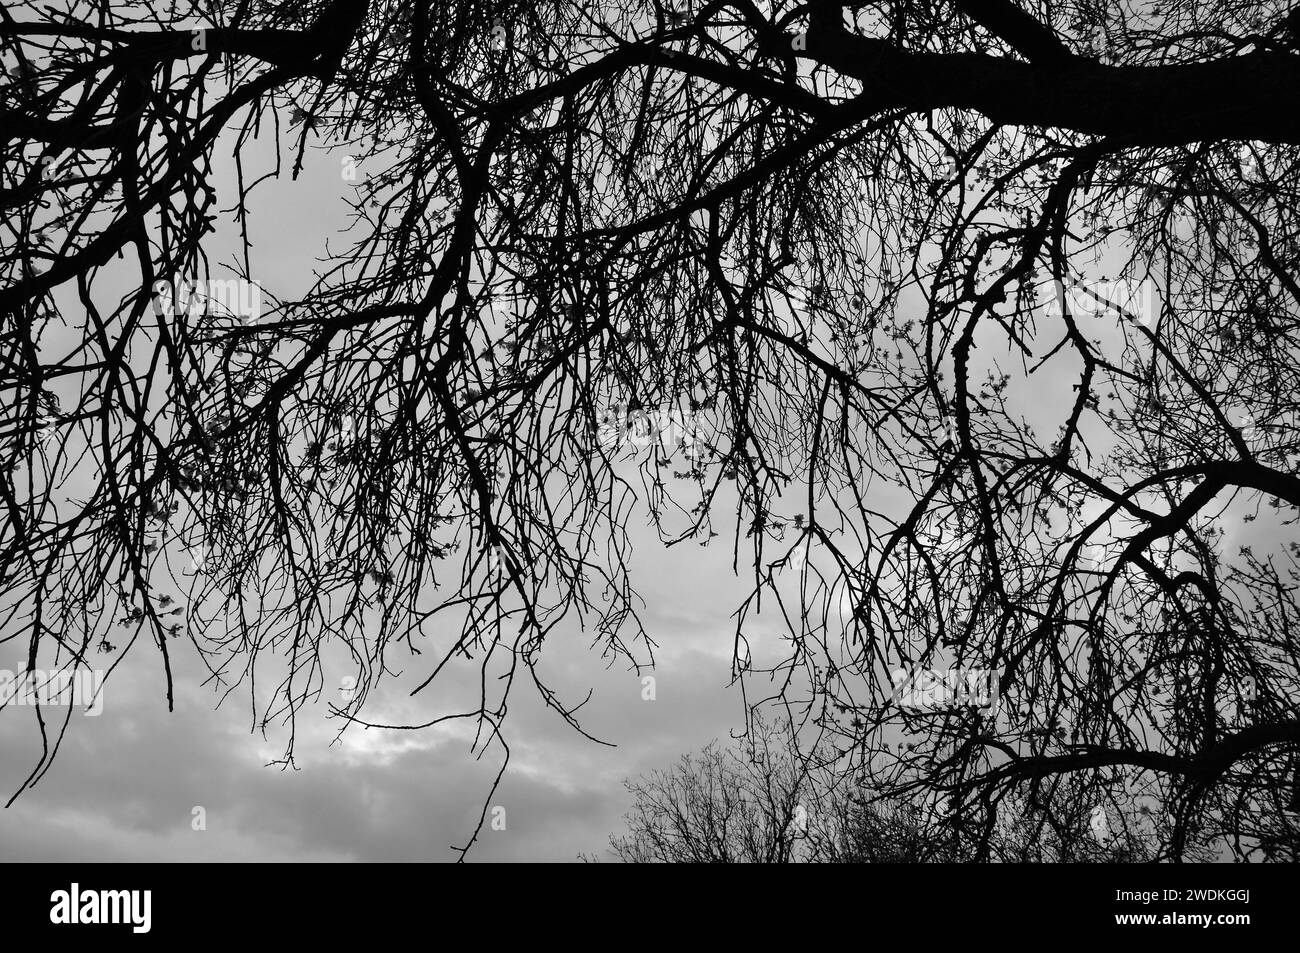 Silhouette de branches d'arbre sous le ciel d'hiver moody. Noir et blanc. Banque D'Images